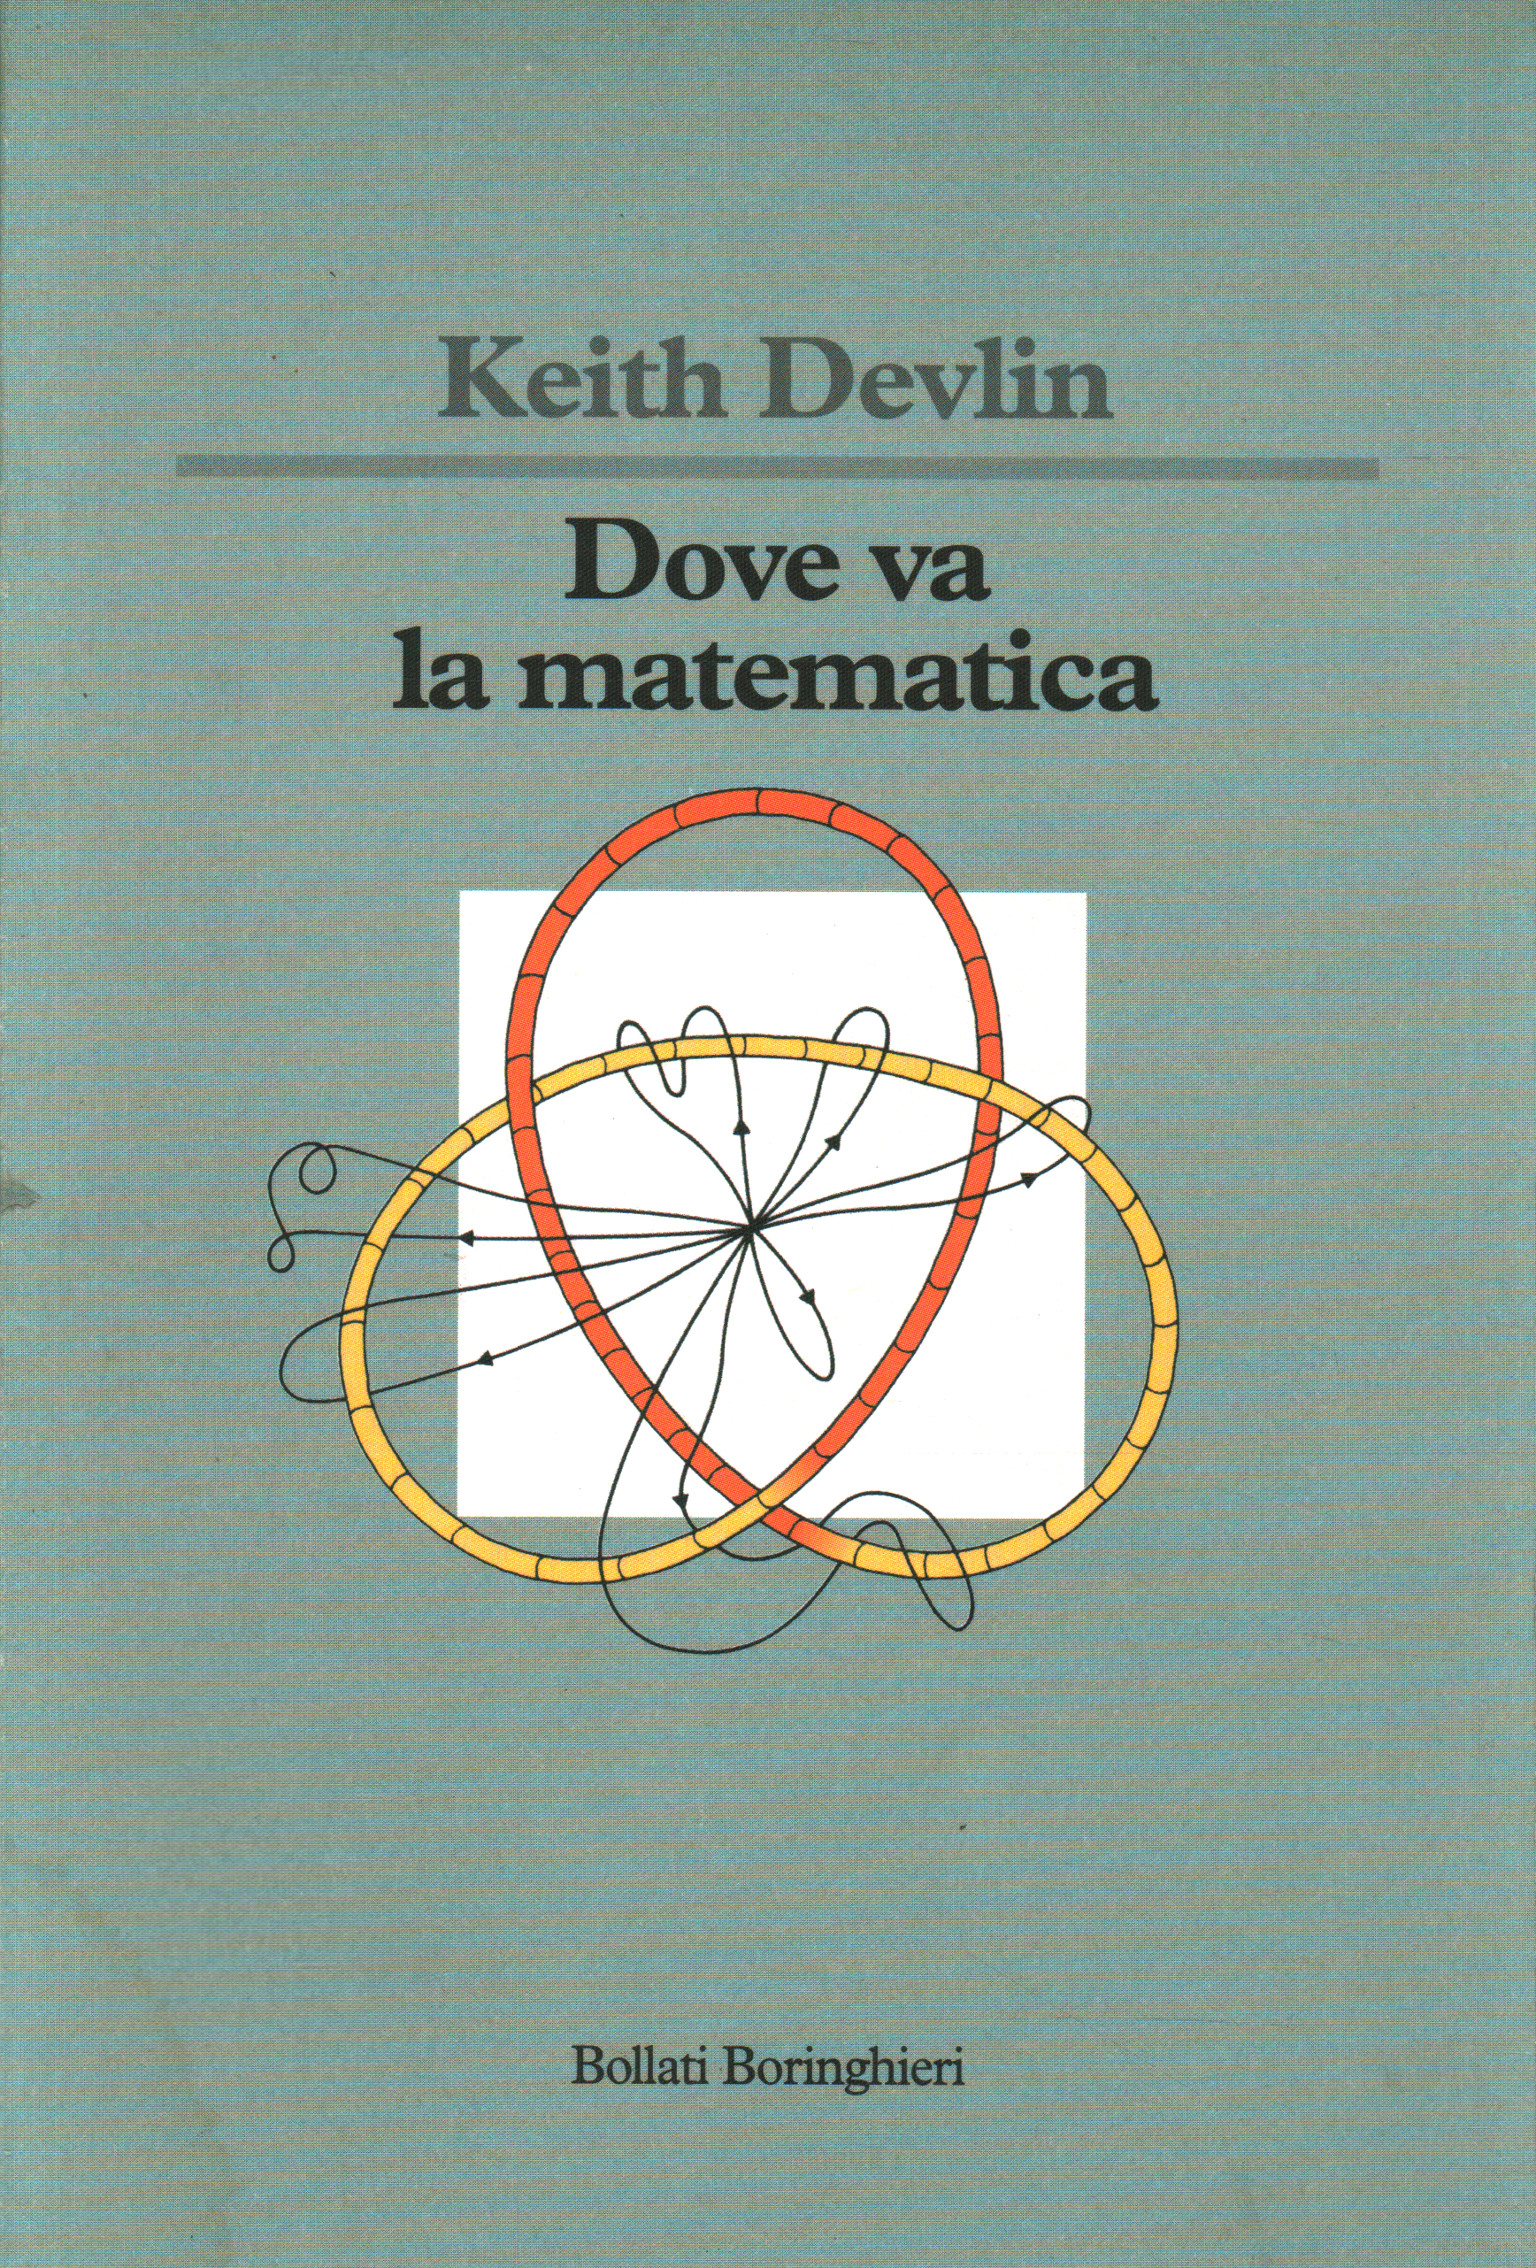 ¿A dónde van las matemáticas, Keith Devlin?